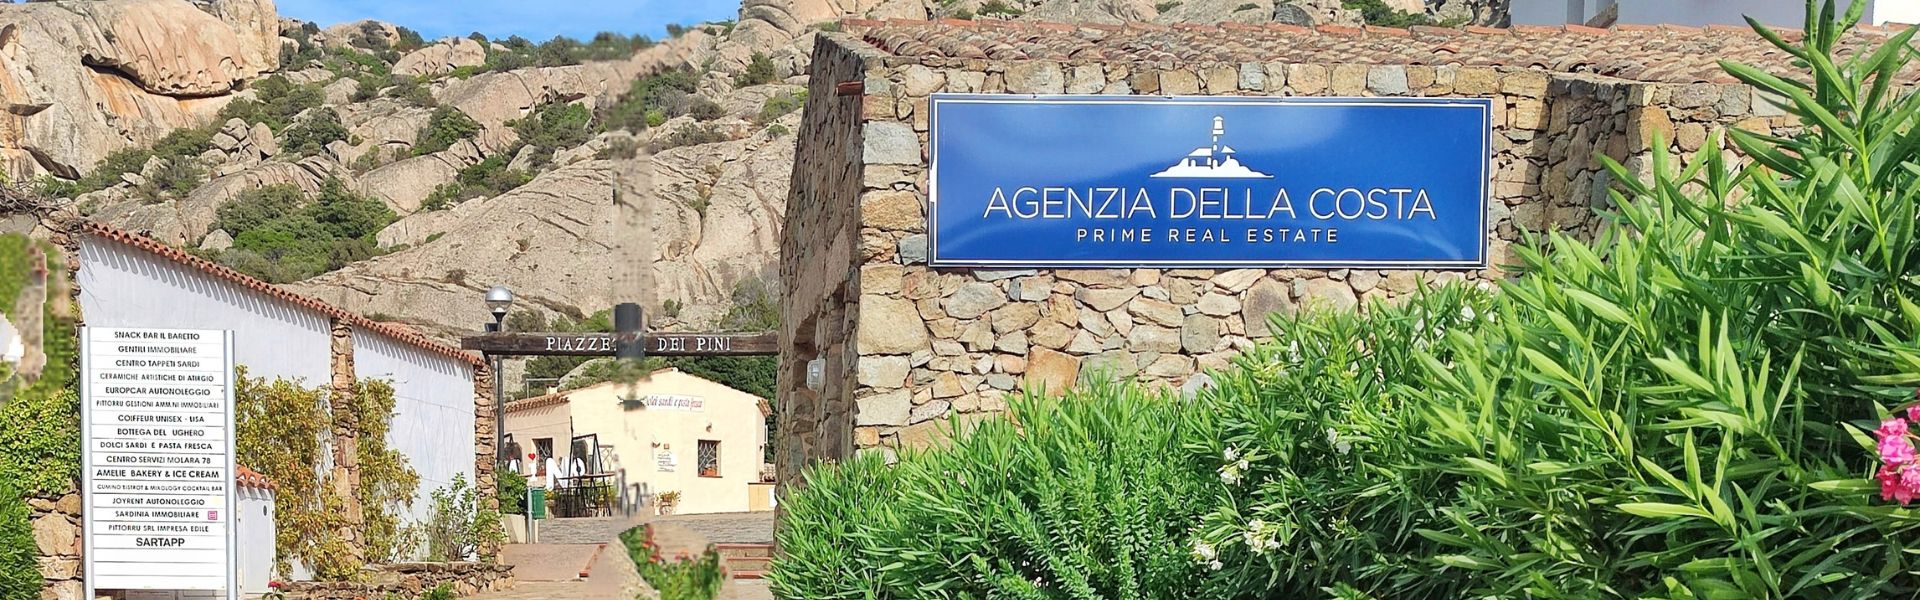 Vendere o comprare casa in Sardegna, i servizi di Agenzia Della Costa